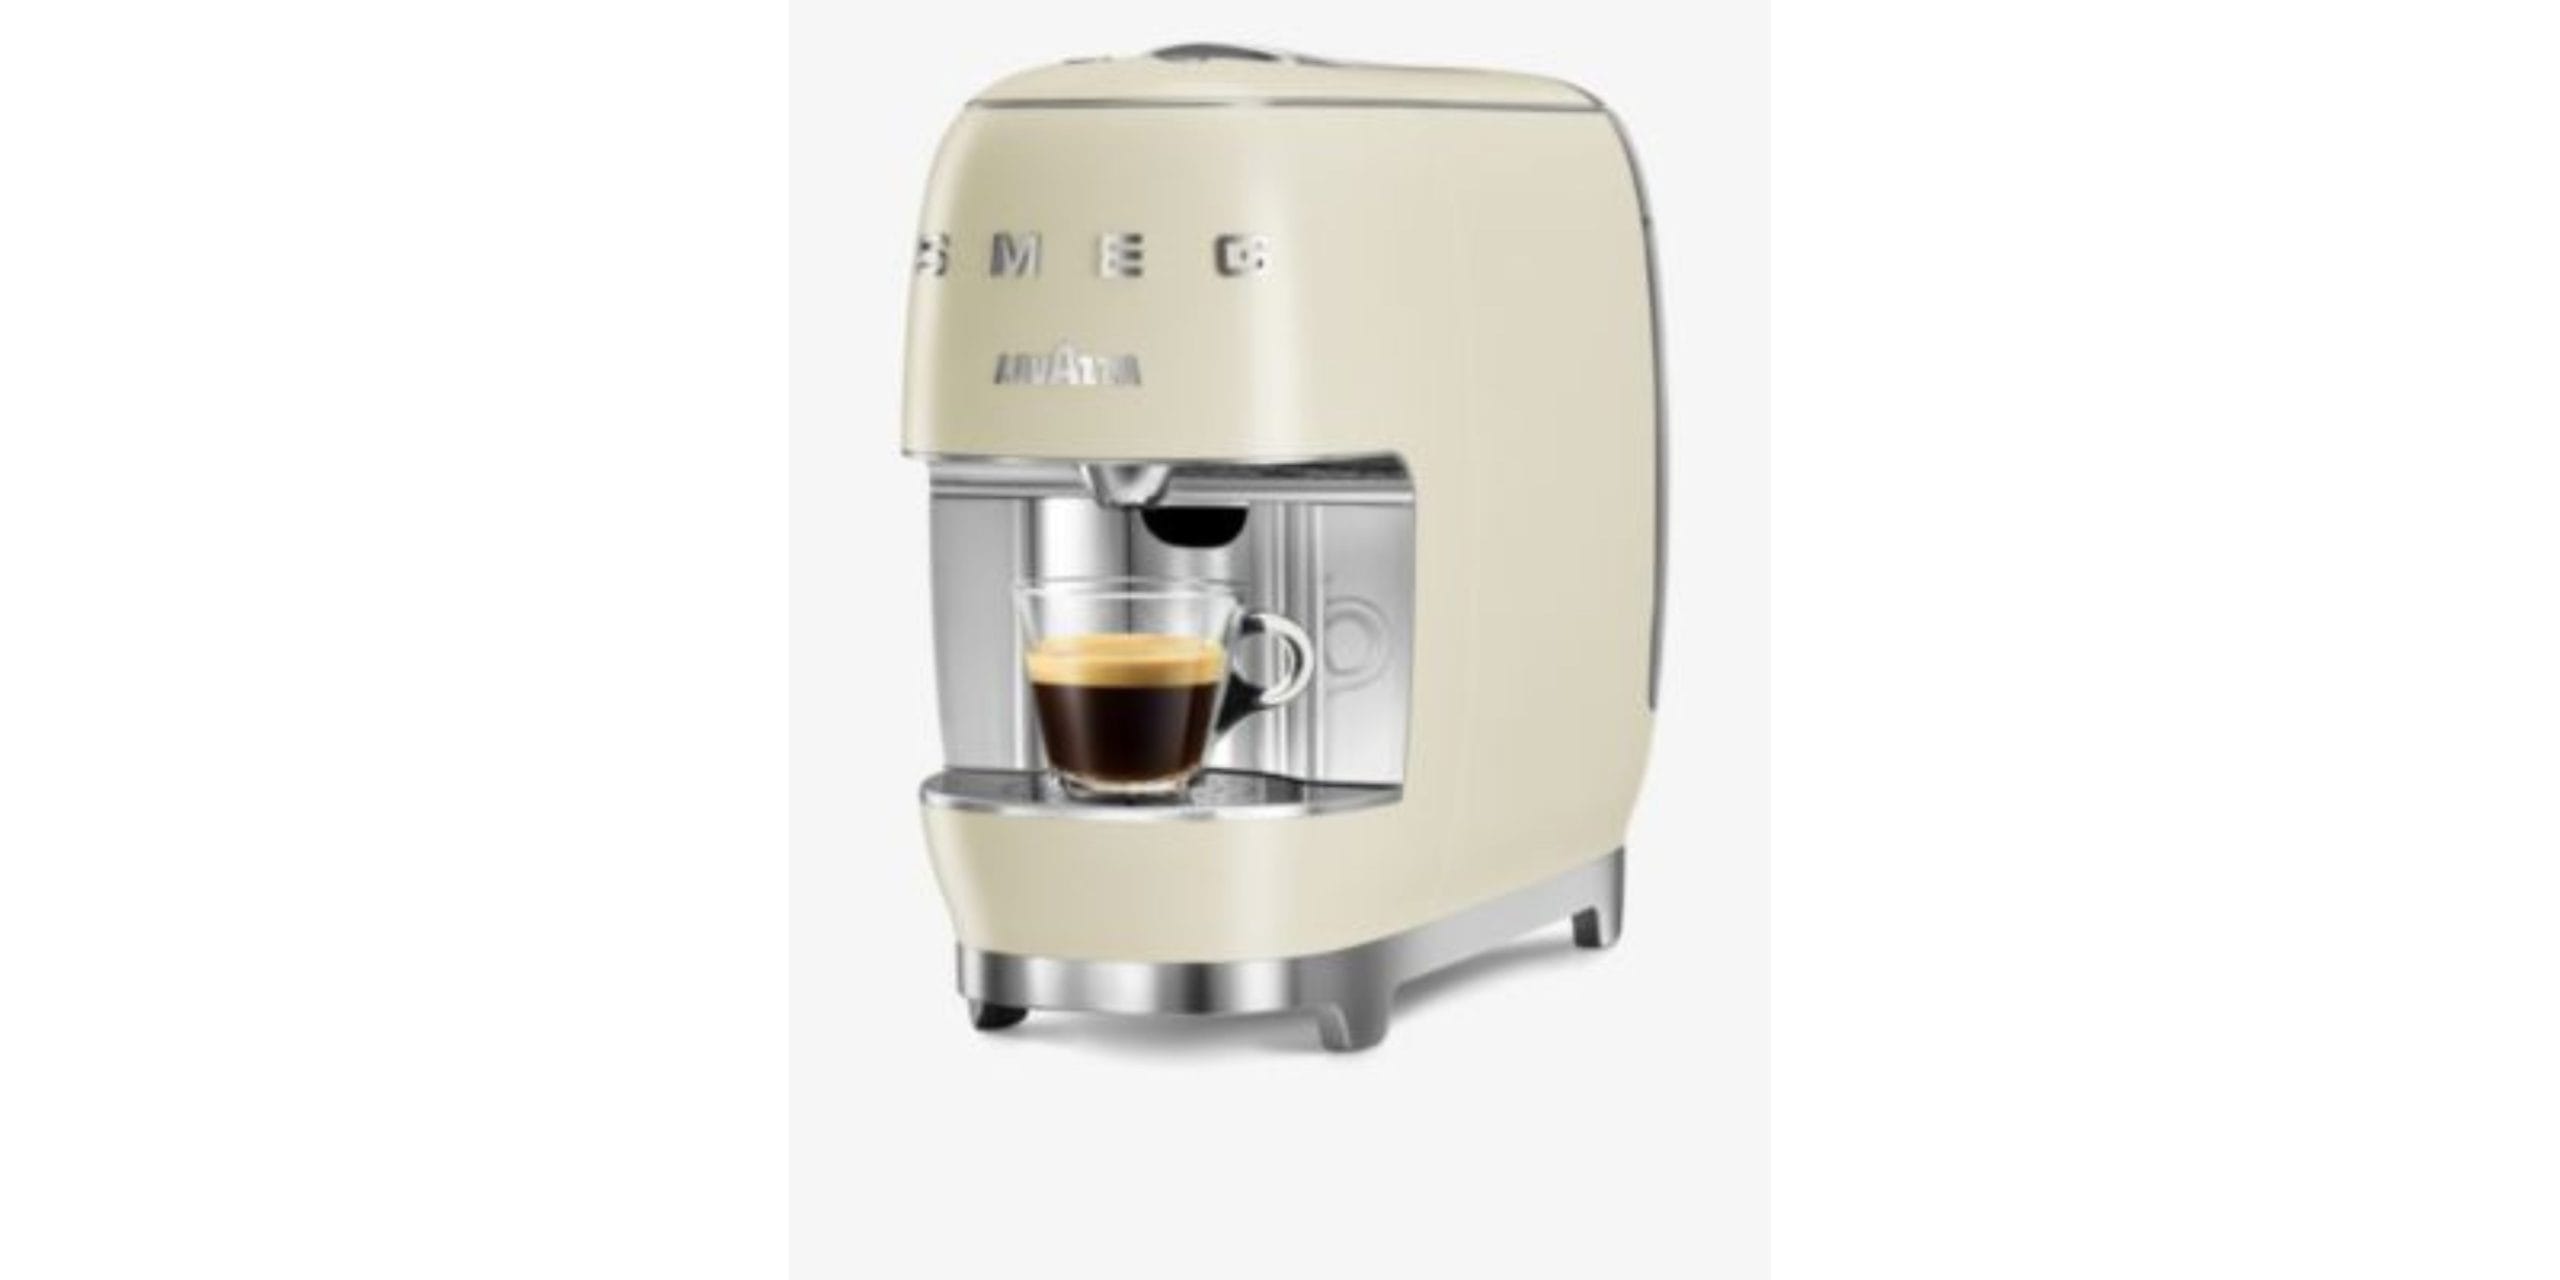 Lavazza X Smeg capsule coffee machine